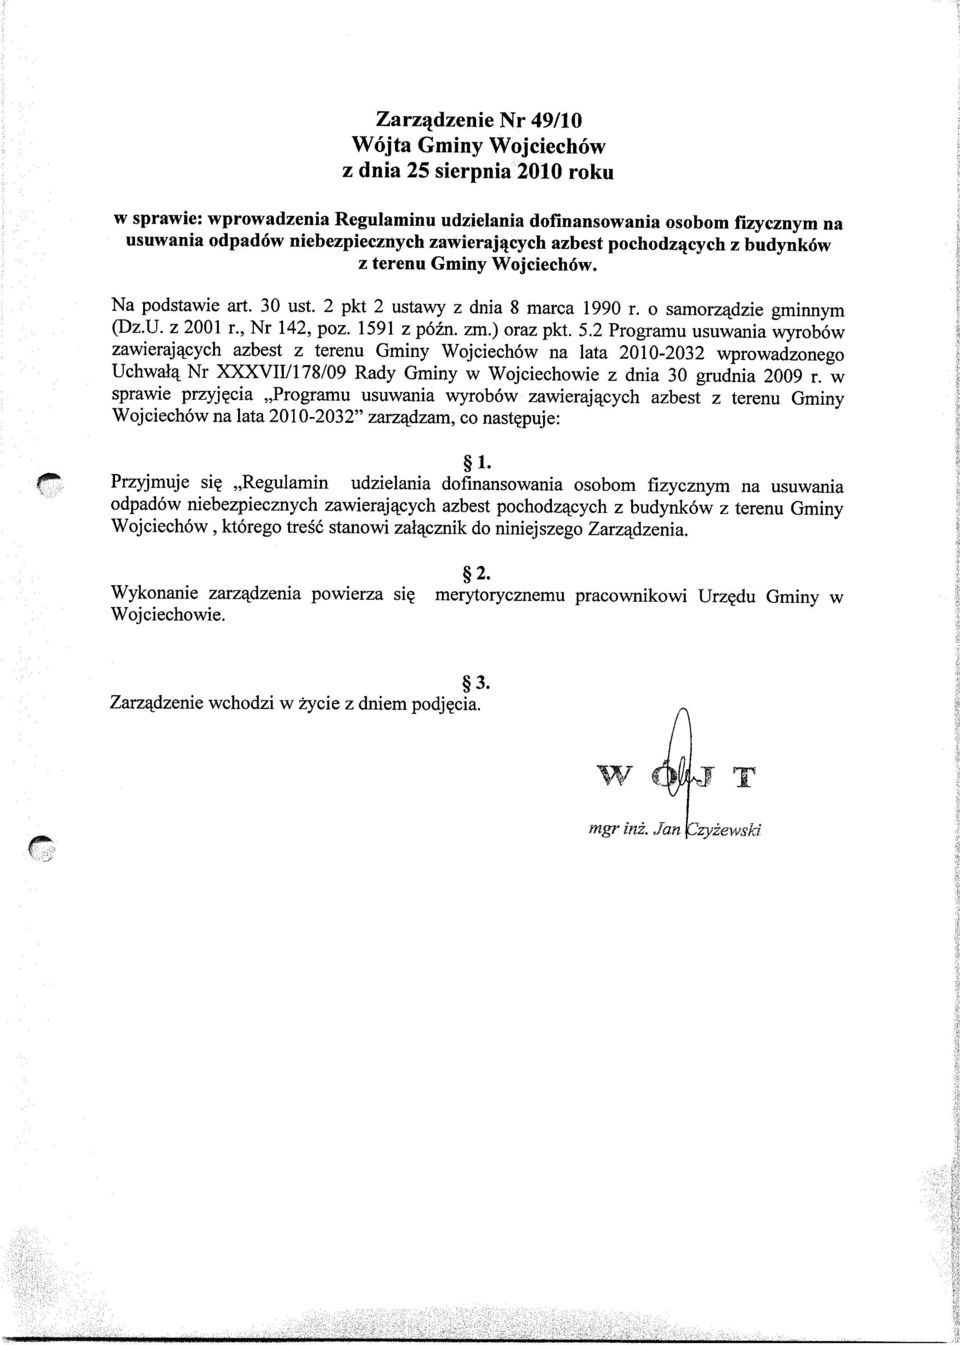 ) oraz pkt. 5.2 Programu usuwania wyrobow zawieraj4cych azbest z terenu Gminy Wojciechow na lata 2010-2032 wprowadzonego Uchwal4 Nr XXXVII/178/09 Rady Gminy w Wojciechowie z dnia 30 grudnia 2009 r.